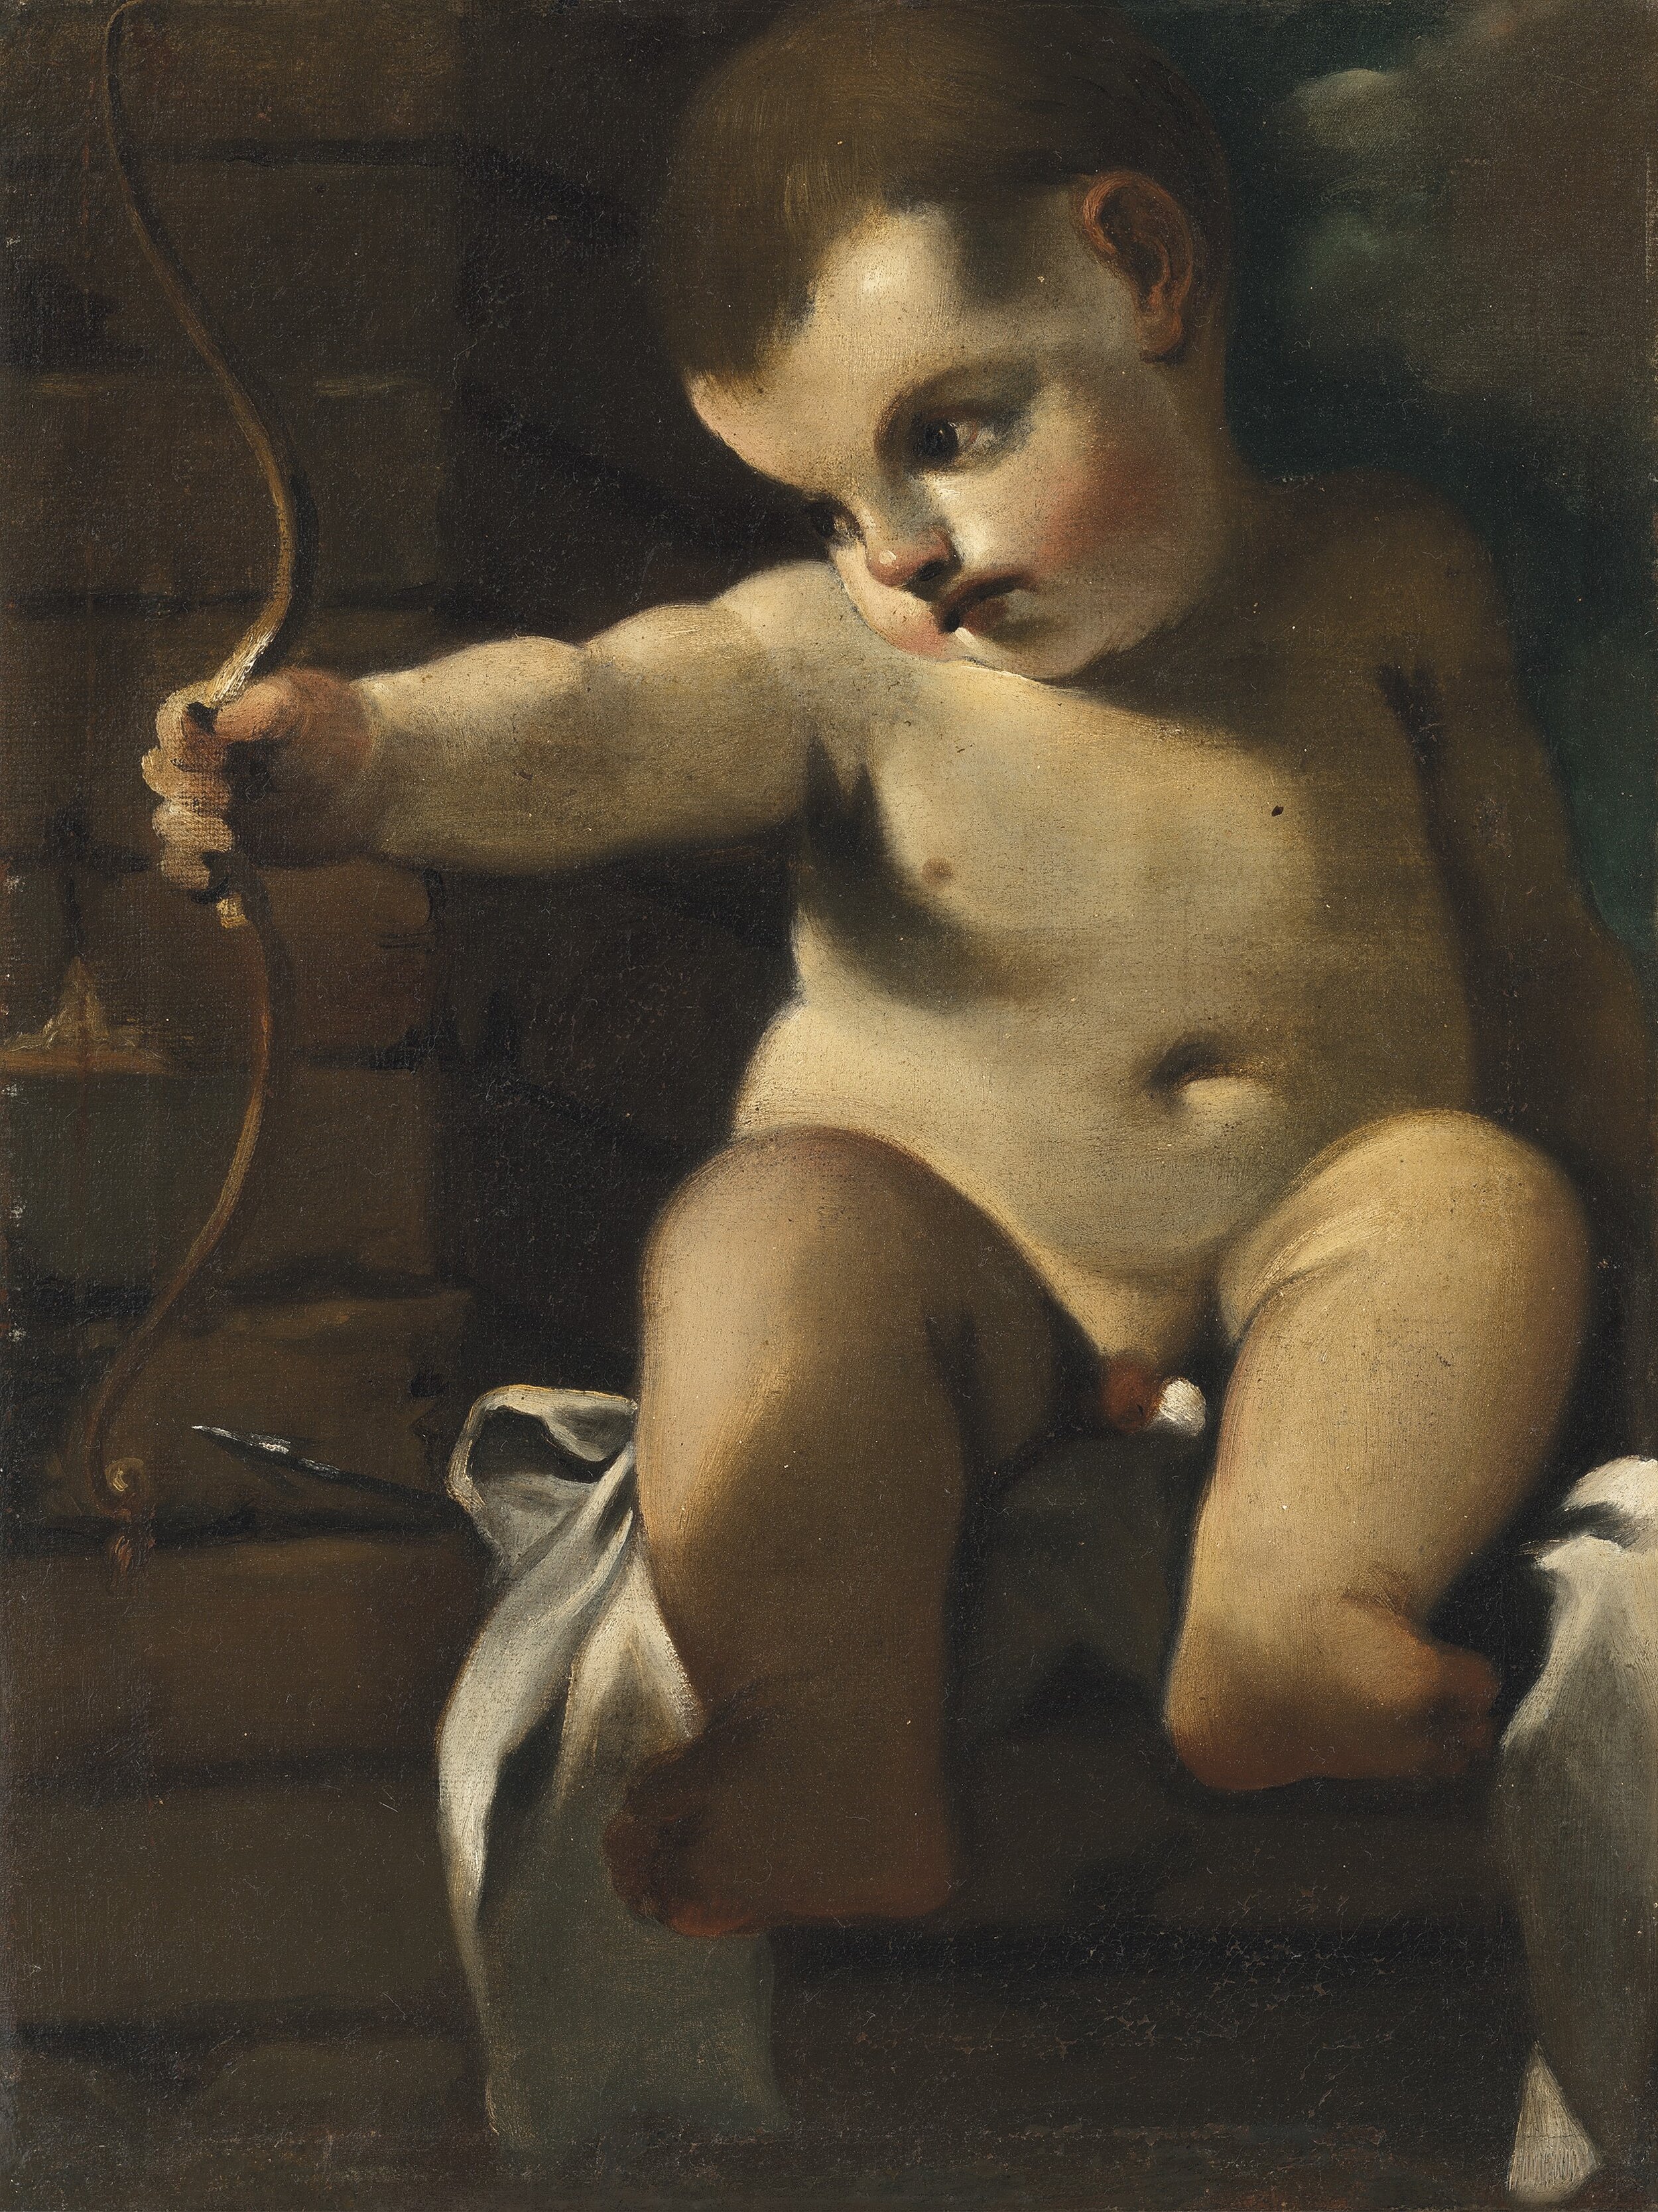 Giovanni Francesco Barbieri called Guercino